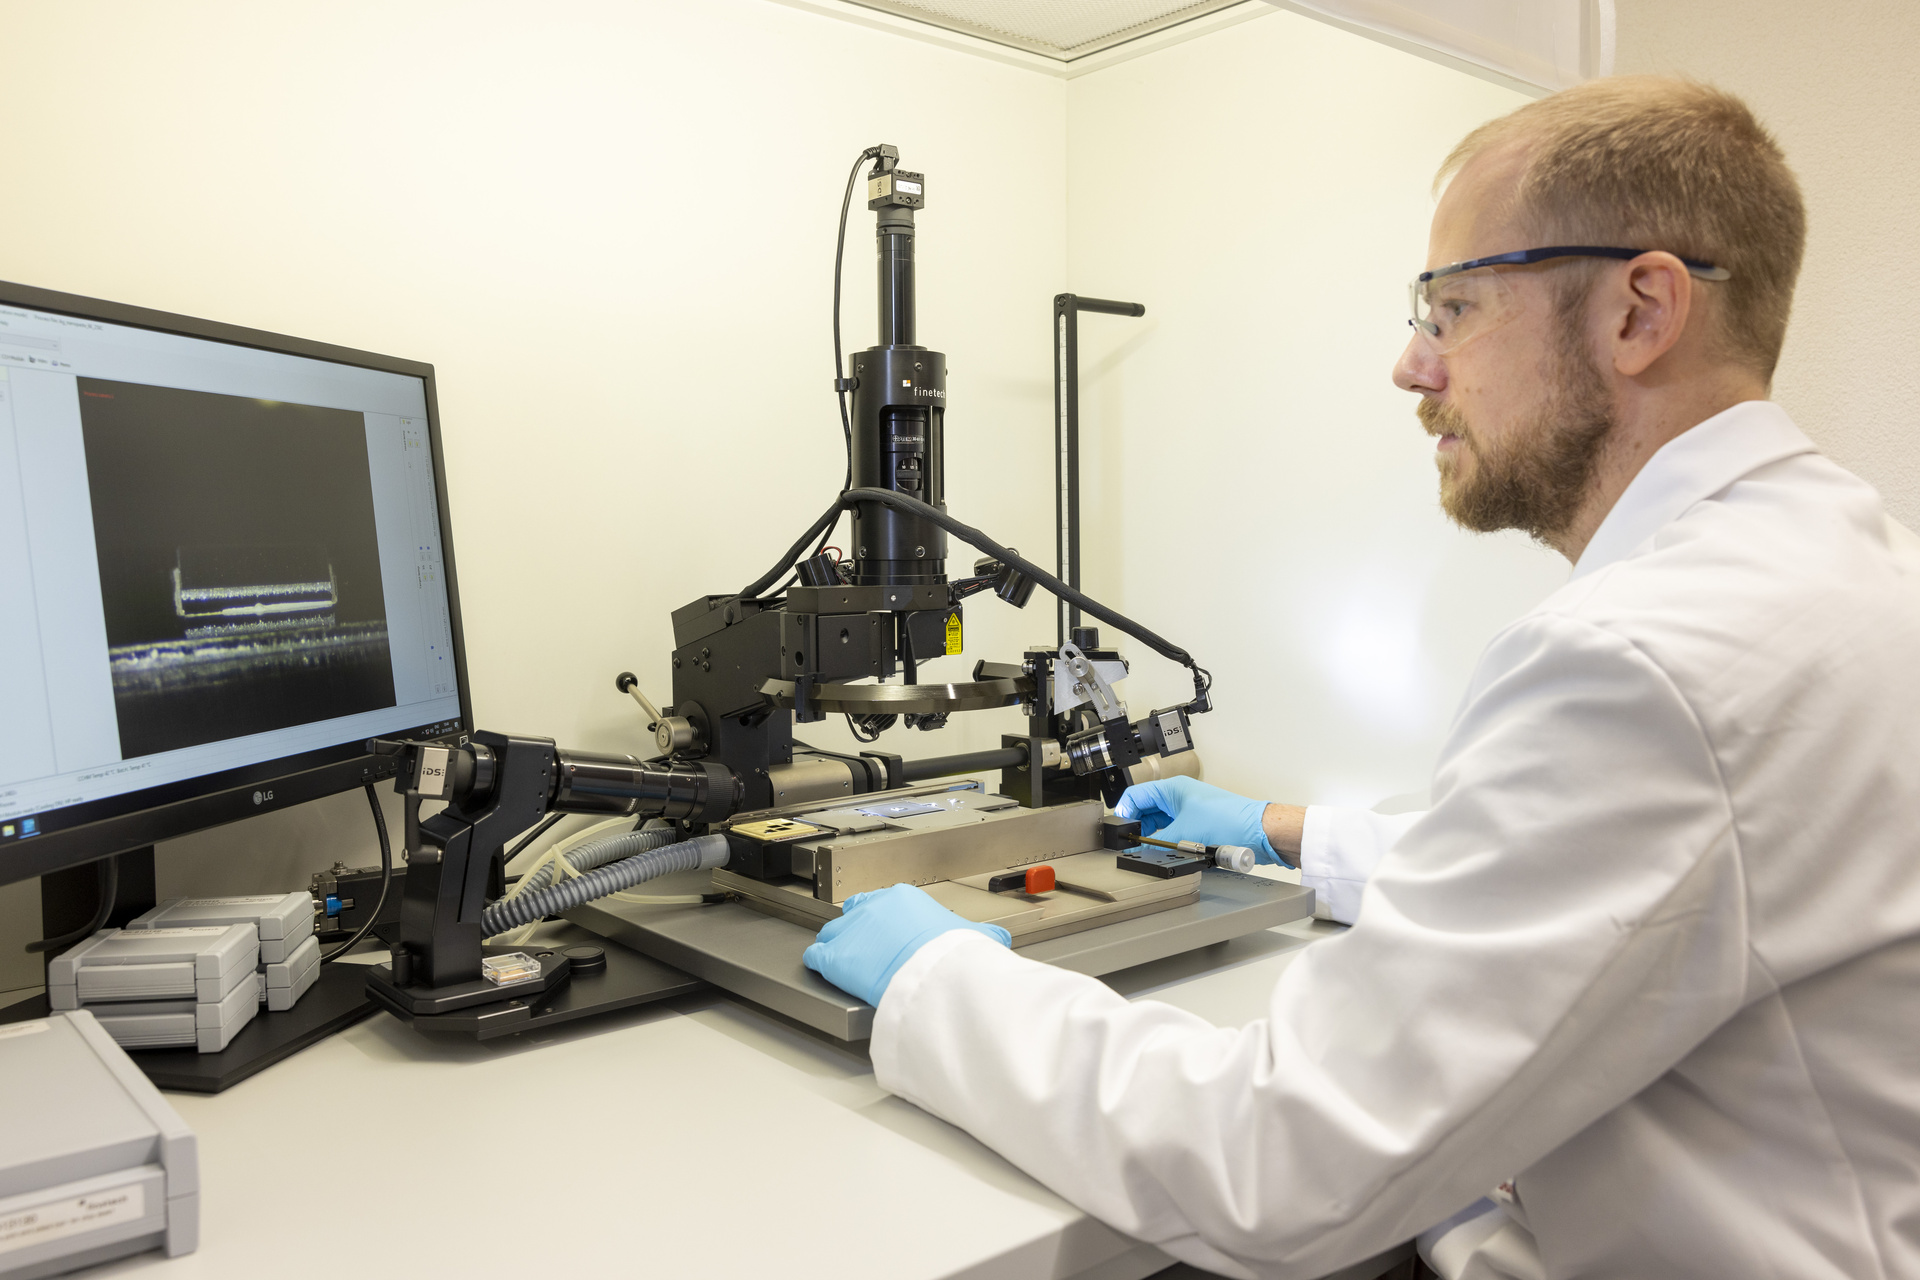 Nanoparticelle: Bastian Rheingans ispeziona un piccolo chip che è stato incollato su un substrato con precisione micrometrica utilizzando un flip-chip bonder, a dimostrazione della qualità di ricerca dell’EMPA